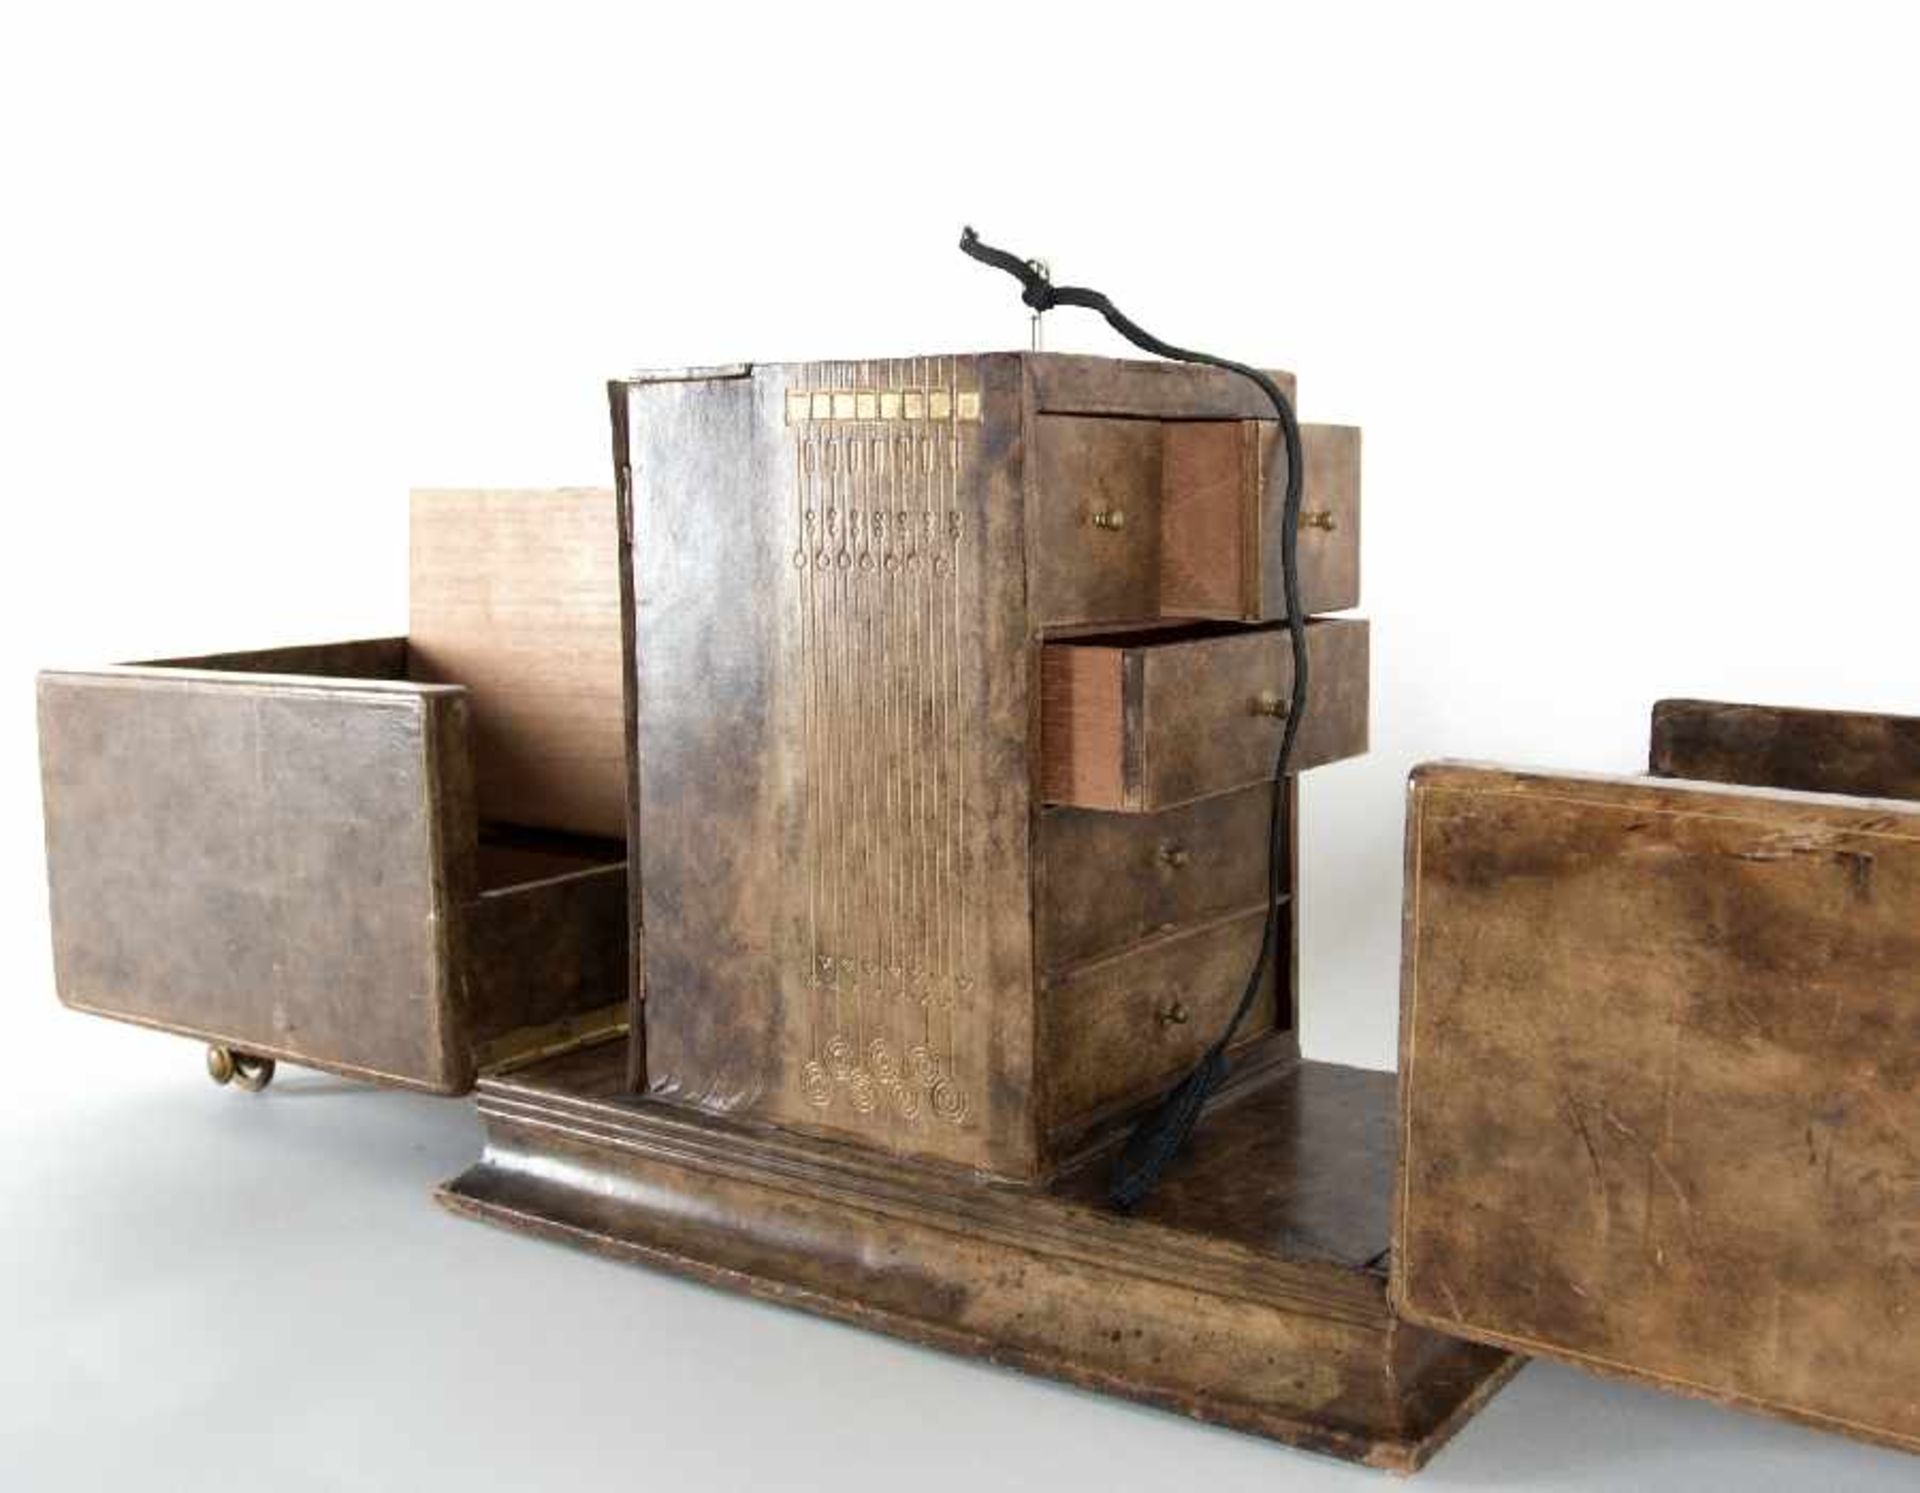 Wiener Werkstätten zugeschr.Kabinettkasten (Zigarrenkasten?)Holz, lederbezogen, mit Messinggriffen - Bild 4 aus 5